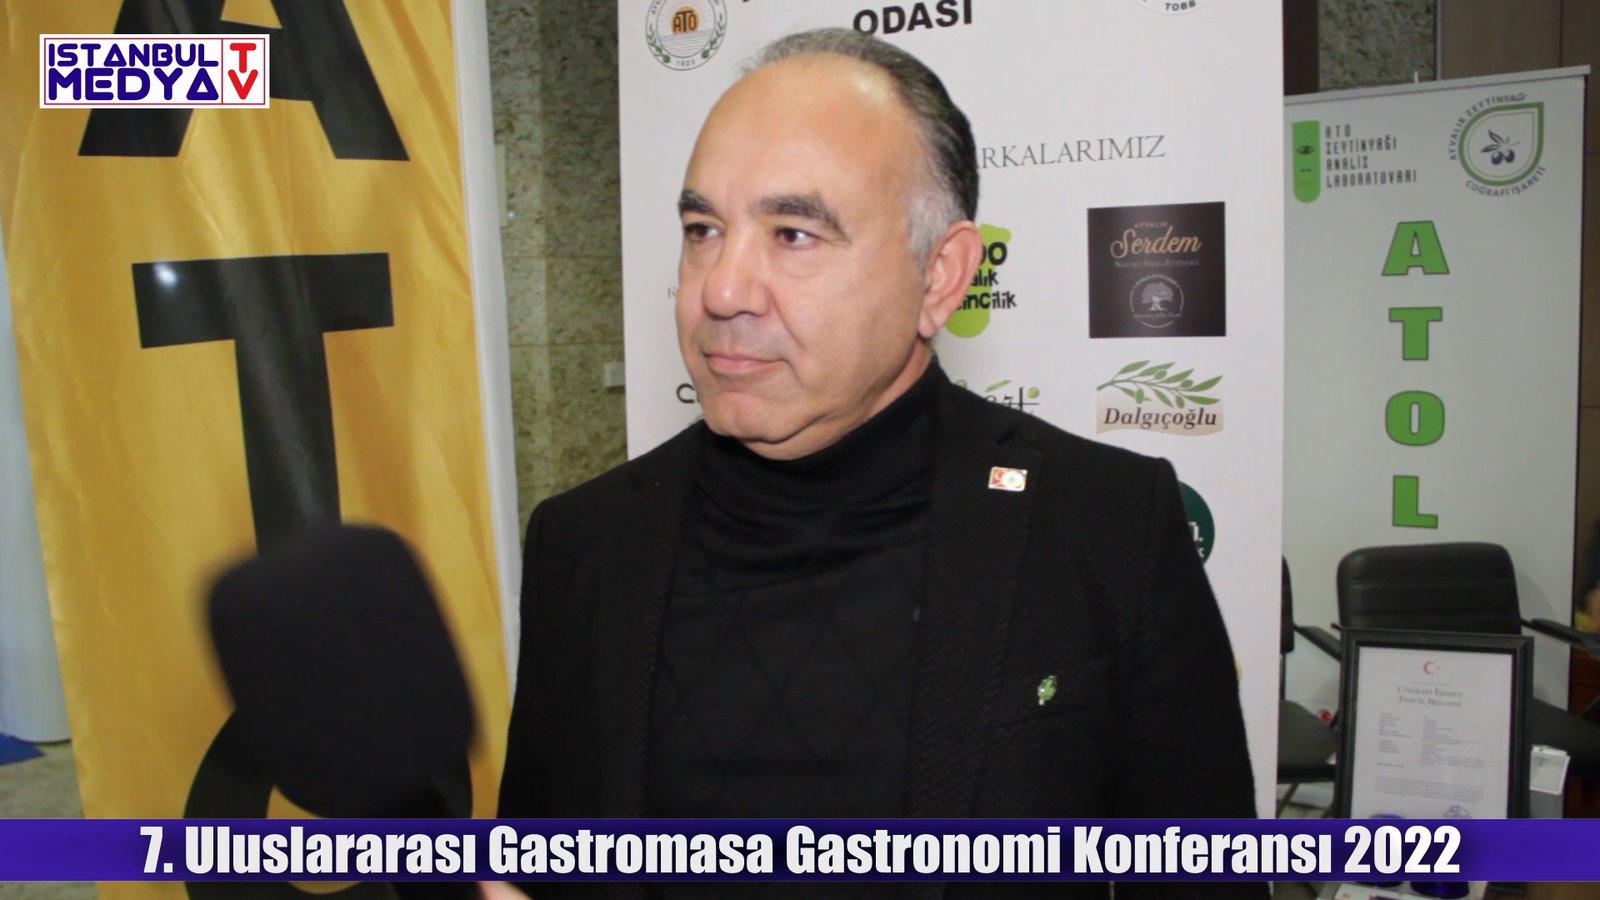 Ali UÇAR Ayvalık Ticaret Odası Yön. Kur. Başkanı / 7. Uluslararası Gastromasa Gastronomi Konferansı